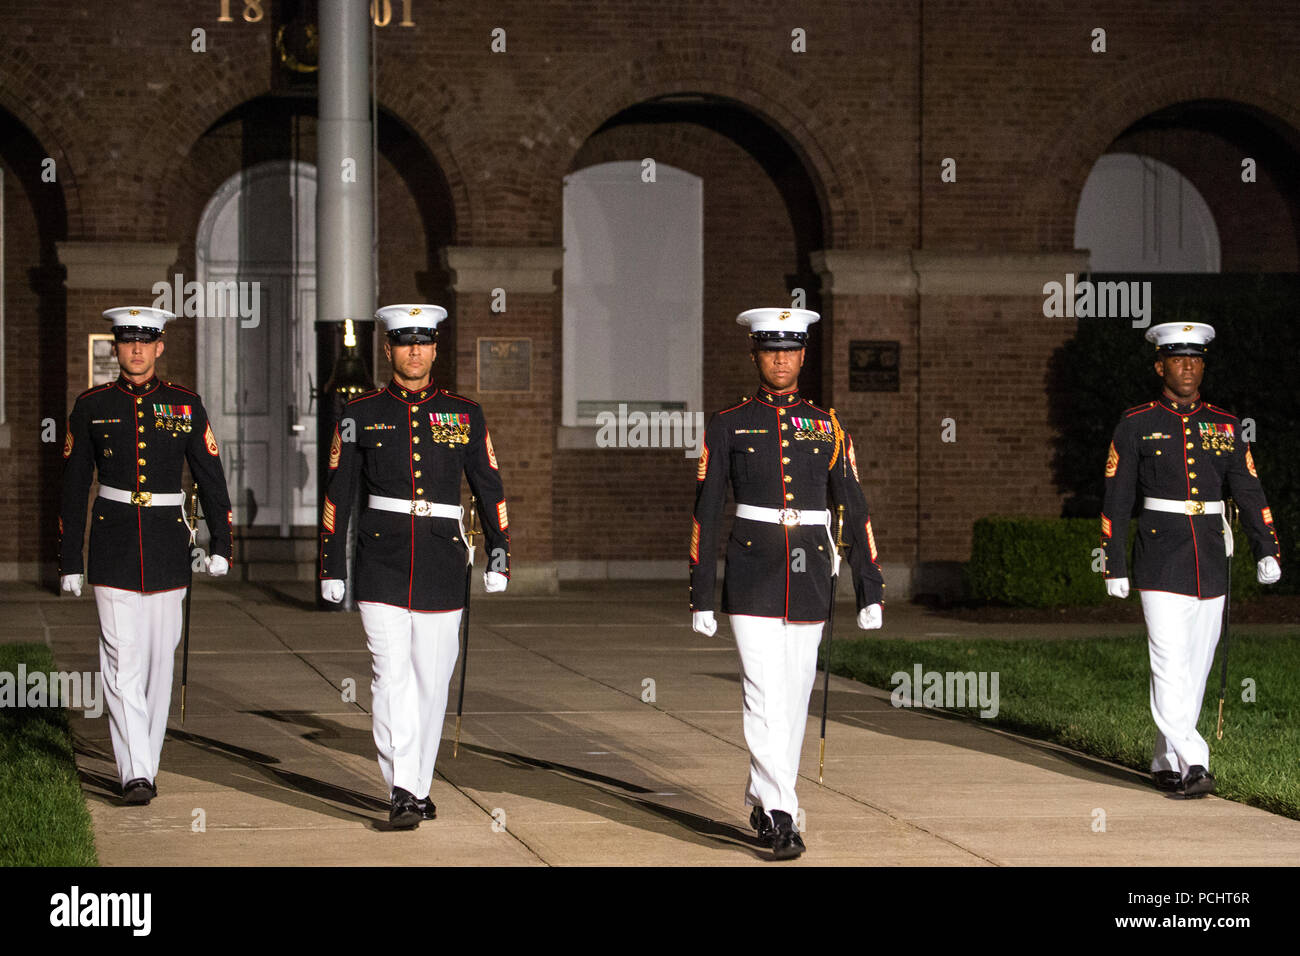 Marines mit dem Marine Barracks Washington D.C. Parade marschiert Personal märz hinunter, die Sie während einer Staff-Noncommissioned Officer Freitag Abend Parade in der Kaserne, 27. Juli 2018 gehen. Während der NATURSCHUTZBEHÖRDE Freitag Abend Parade, NATURSCHUTZBEHÖRDE der Knüppel von wichtigen Führungskräften' marching Positionen in der Regel von den Offizieren und Unteroffizieren nicht übernehmen. Stockfoto